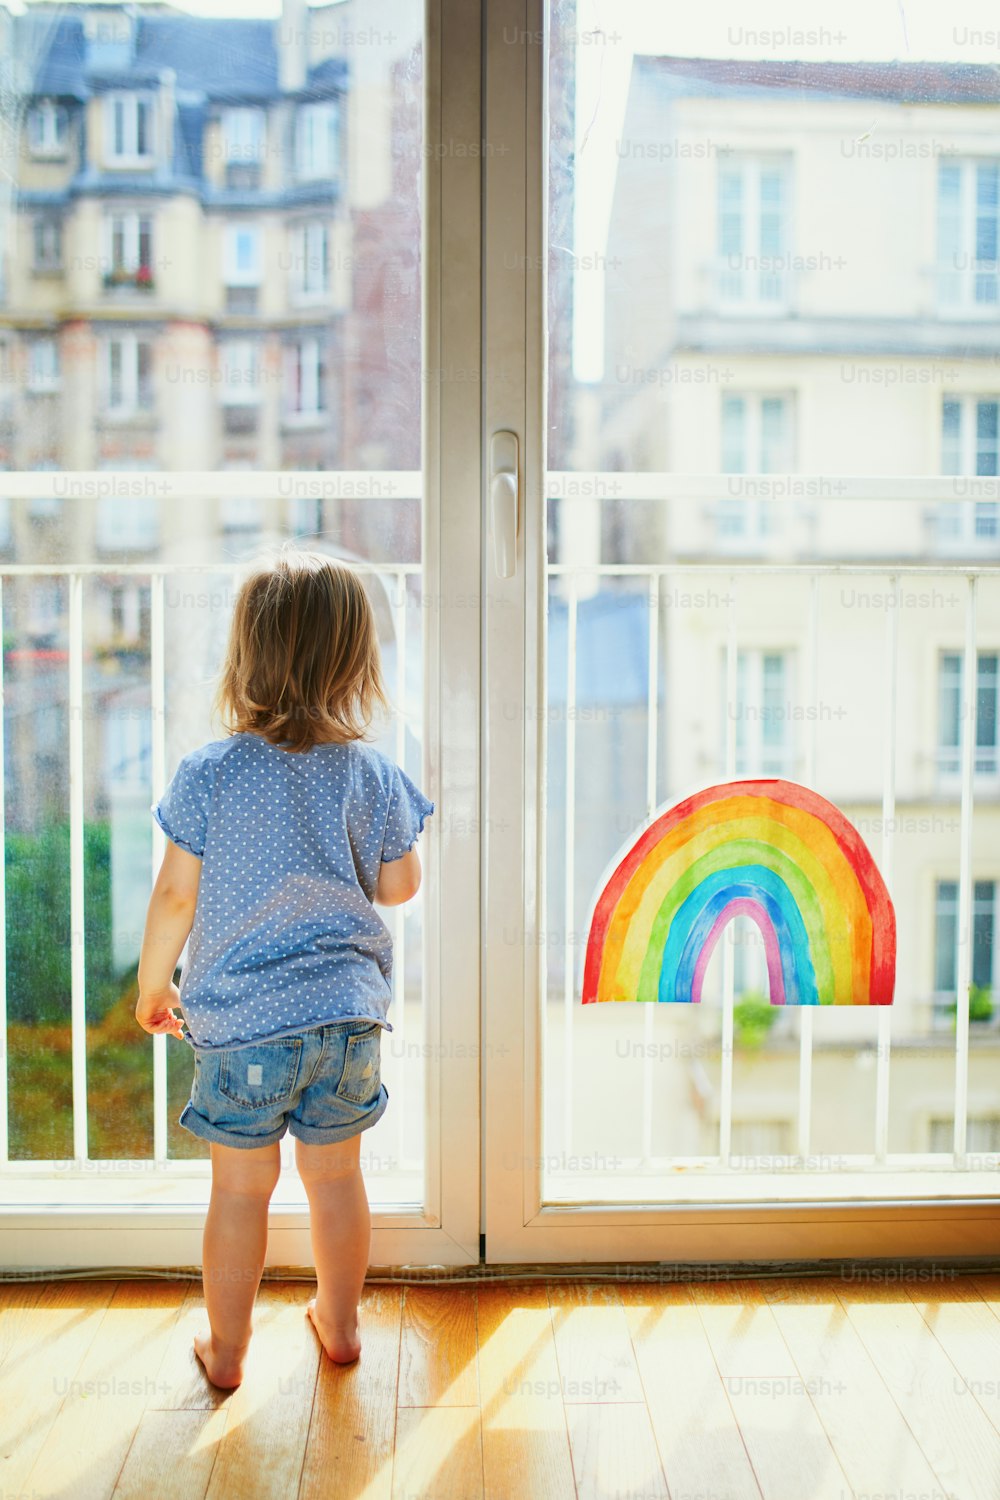 Adorable niña pequeña mirando a través de la ventana con el dibujo del arco iris. Juegos creativos para niños que se quedan en casa durante el confinamiento. Concepto de autoaislamiento y cuarentena por coronavirus